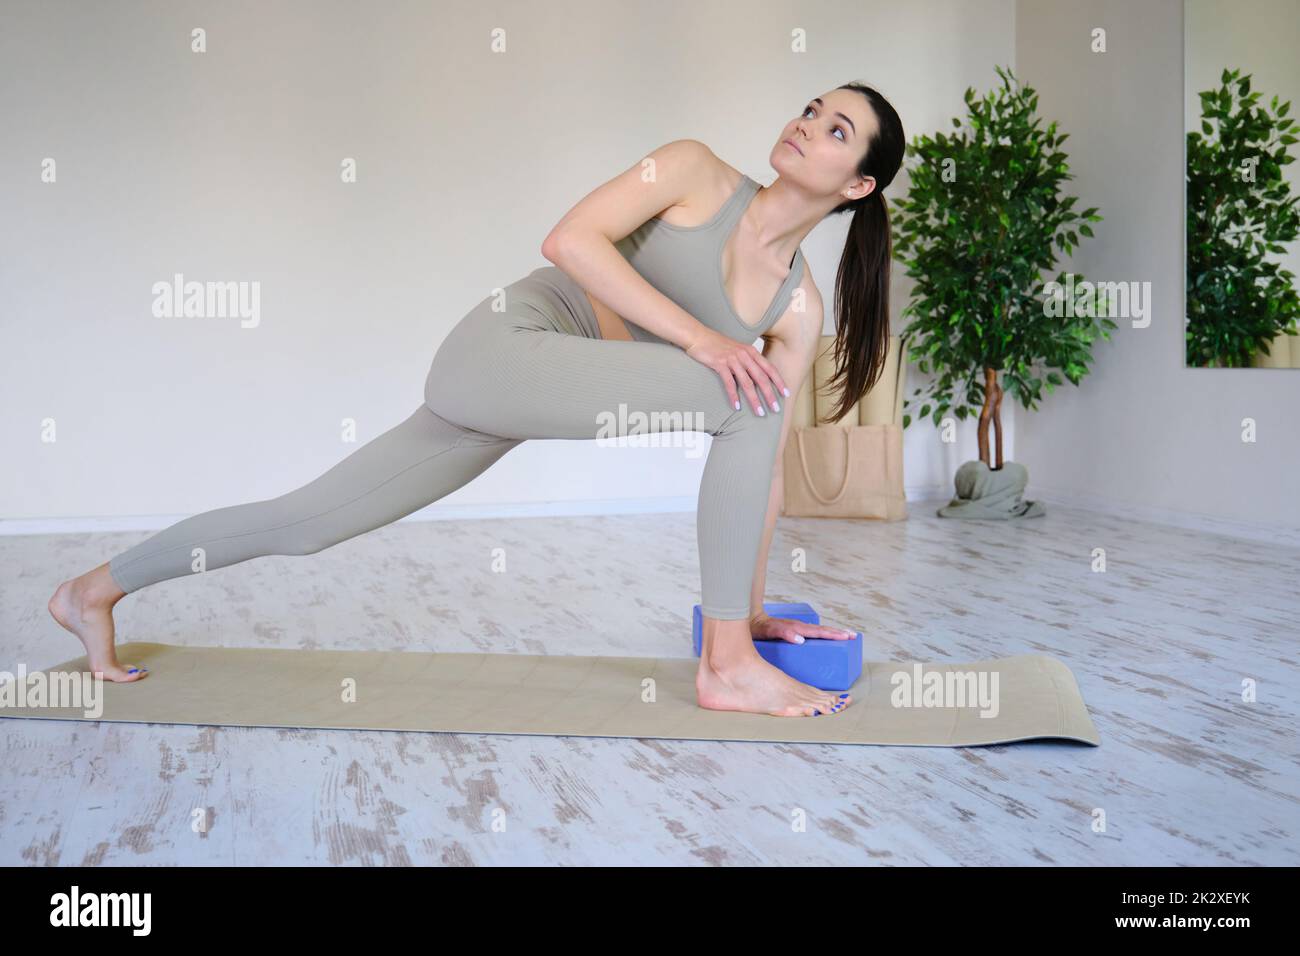 Junge schöne Frau praktiziert Yoga in einem hellen modernen Studio. Gesunder Lebensstil. Stockfoto